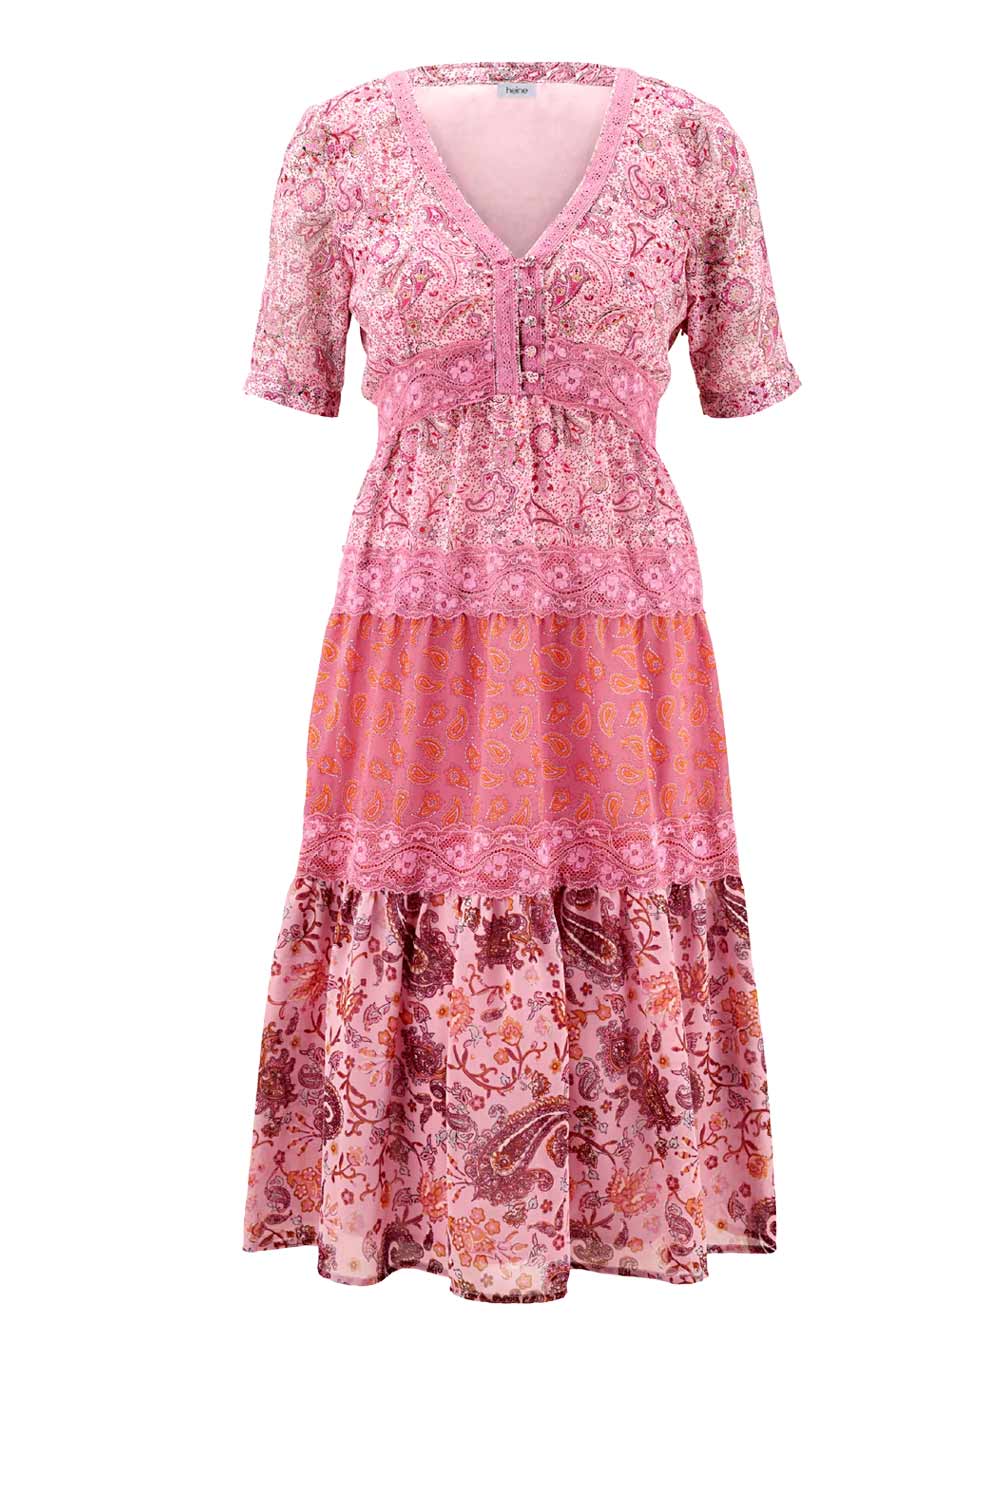 Heine Damen Kleid knielang figurumspielend Druckkleid mit Spitze pink bunt missforty